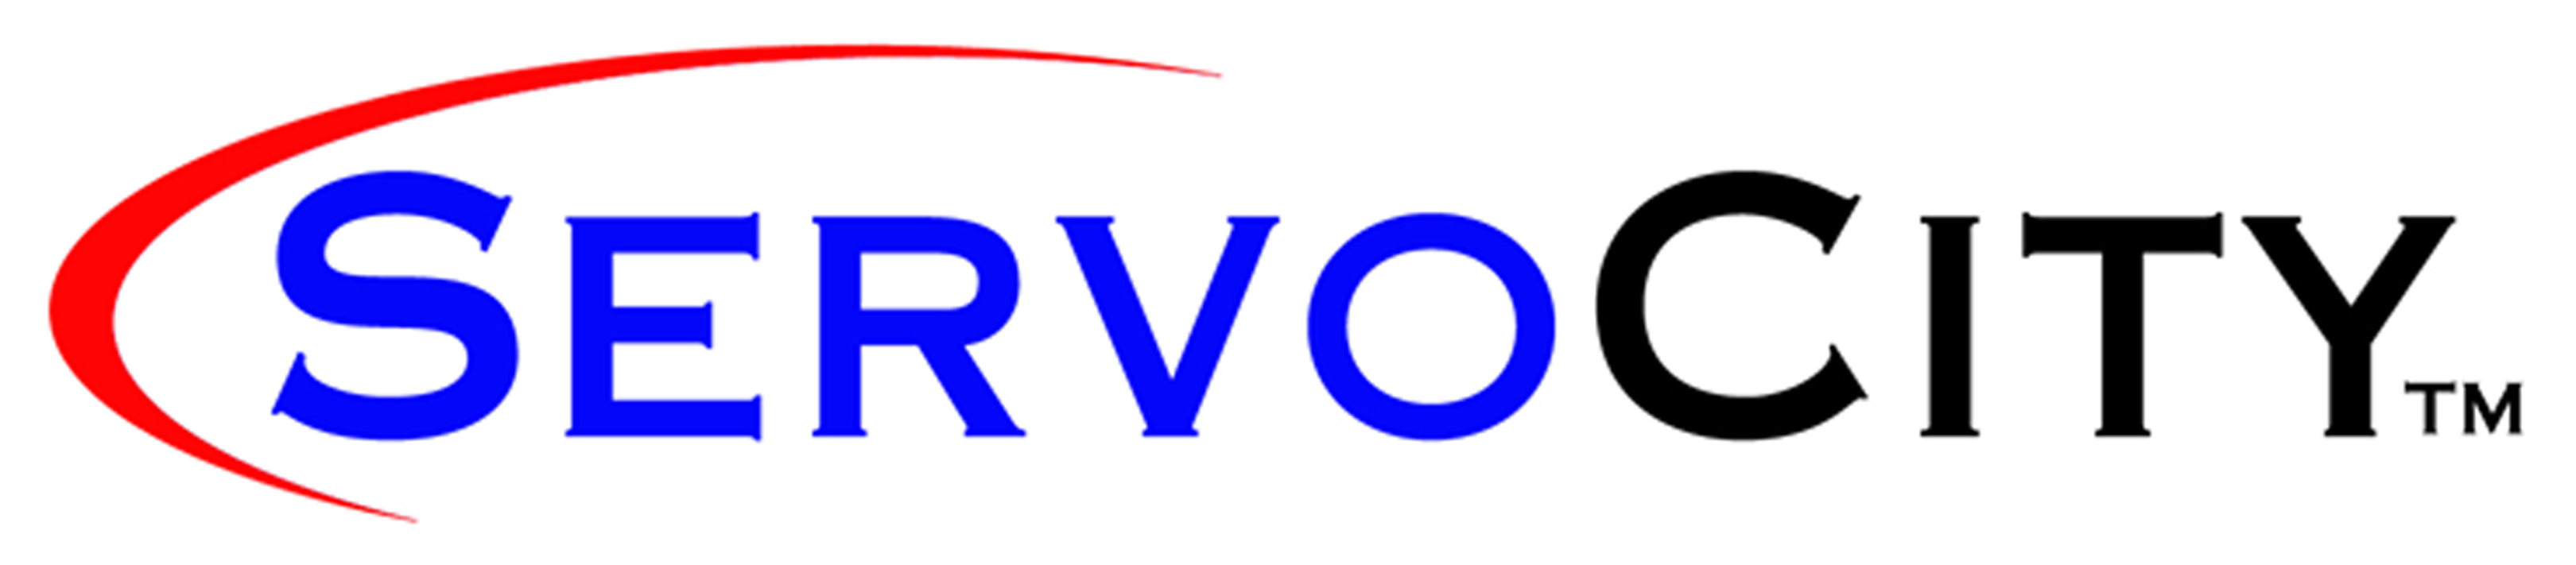 Servo City logo